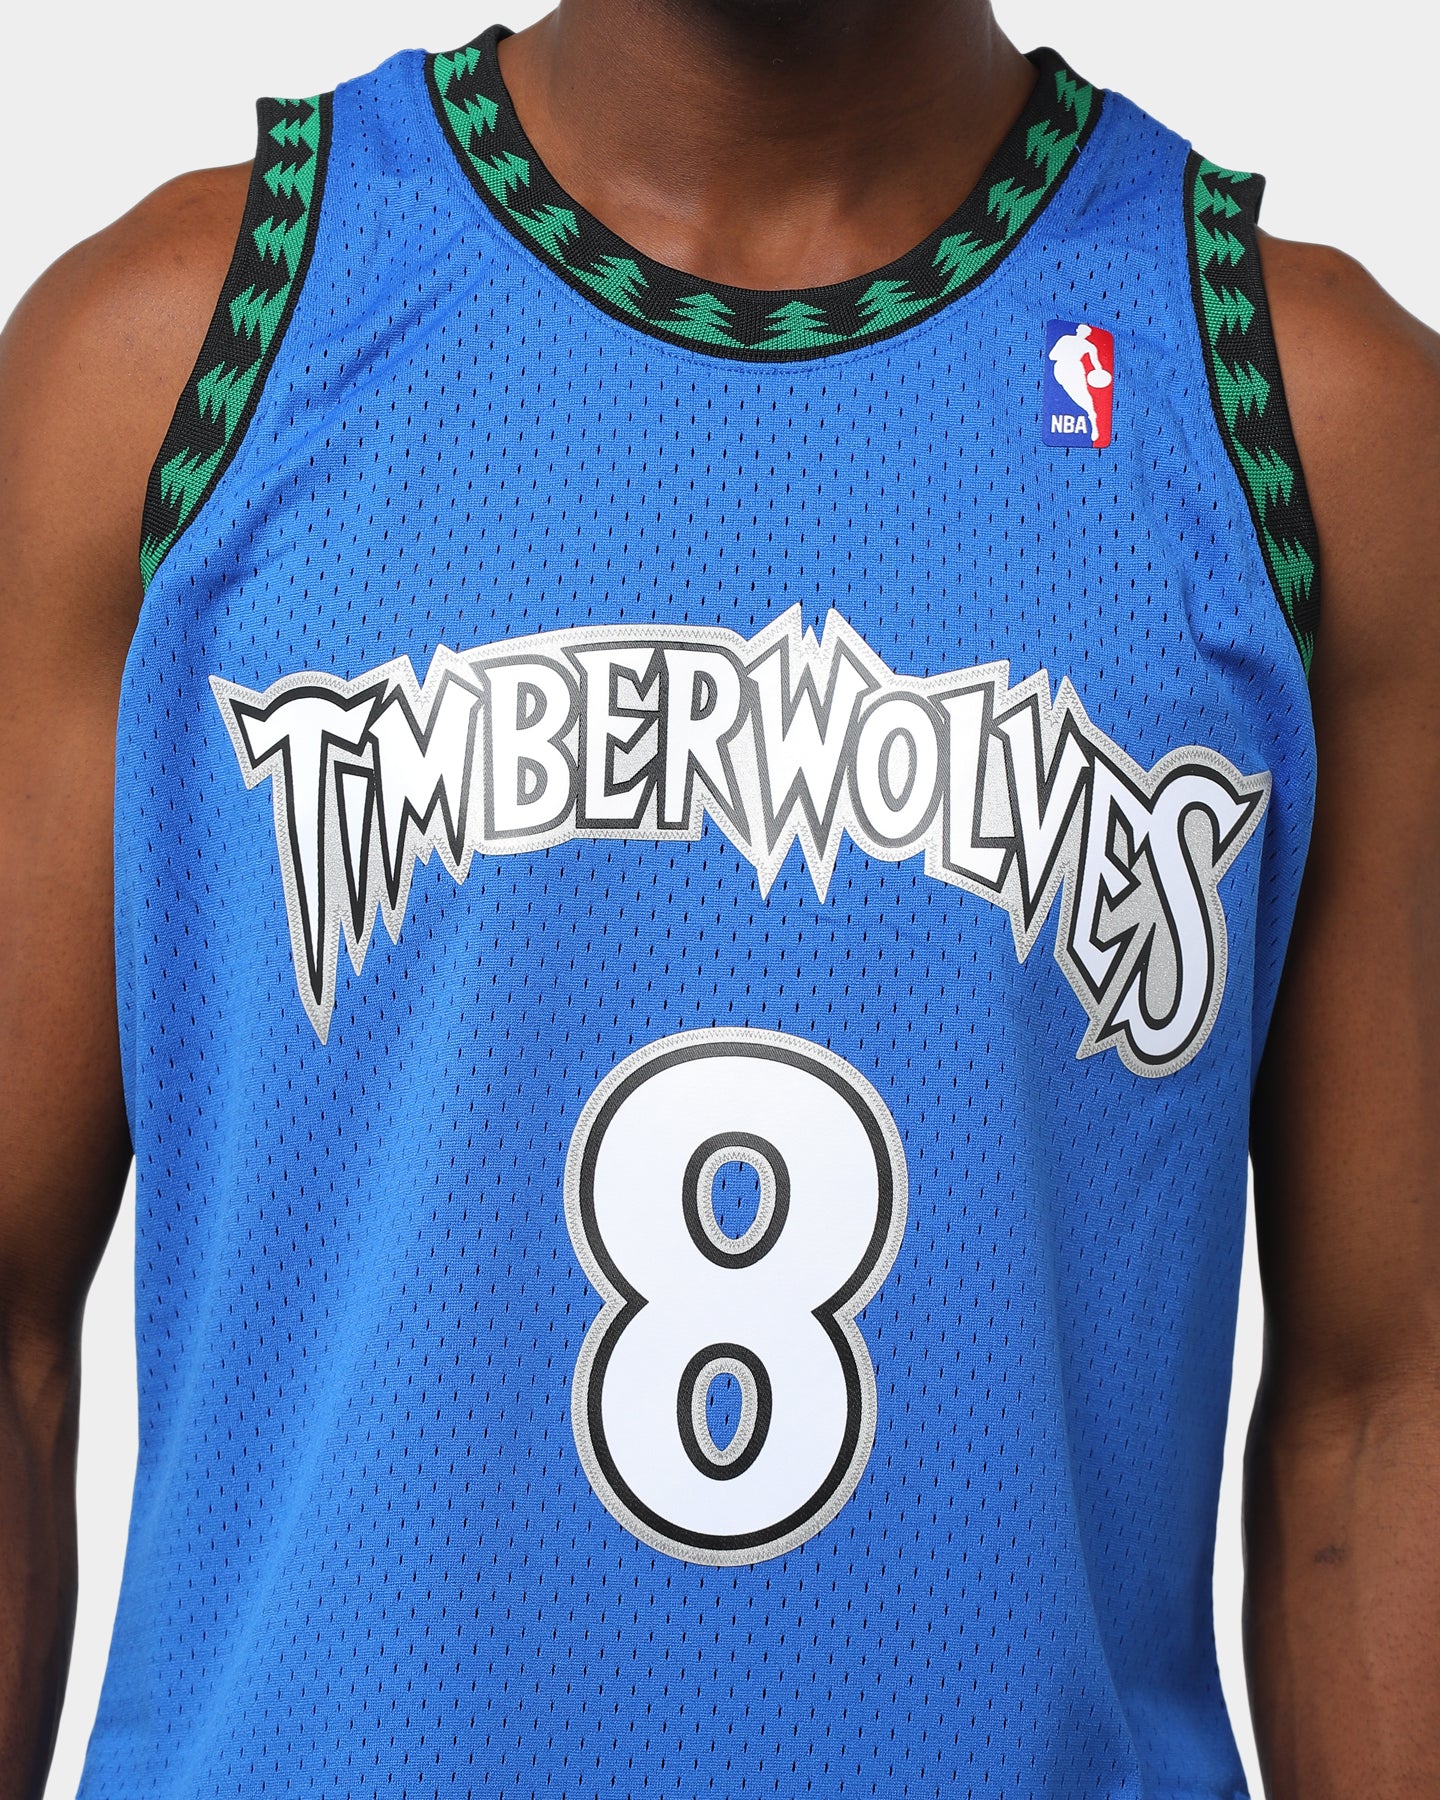 latrell sprewell timberwolves jersey